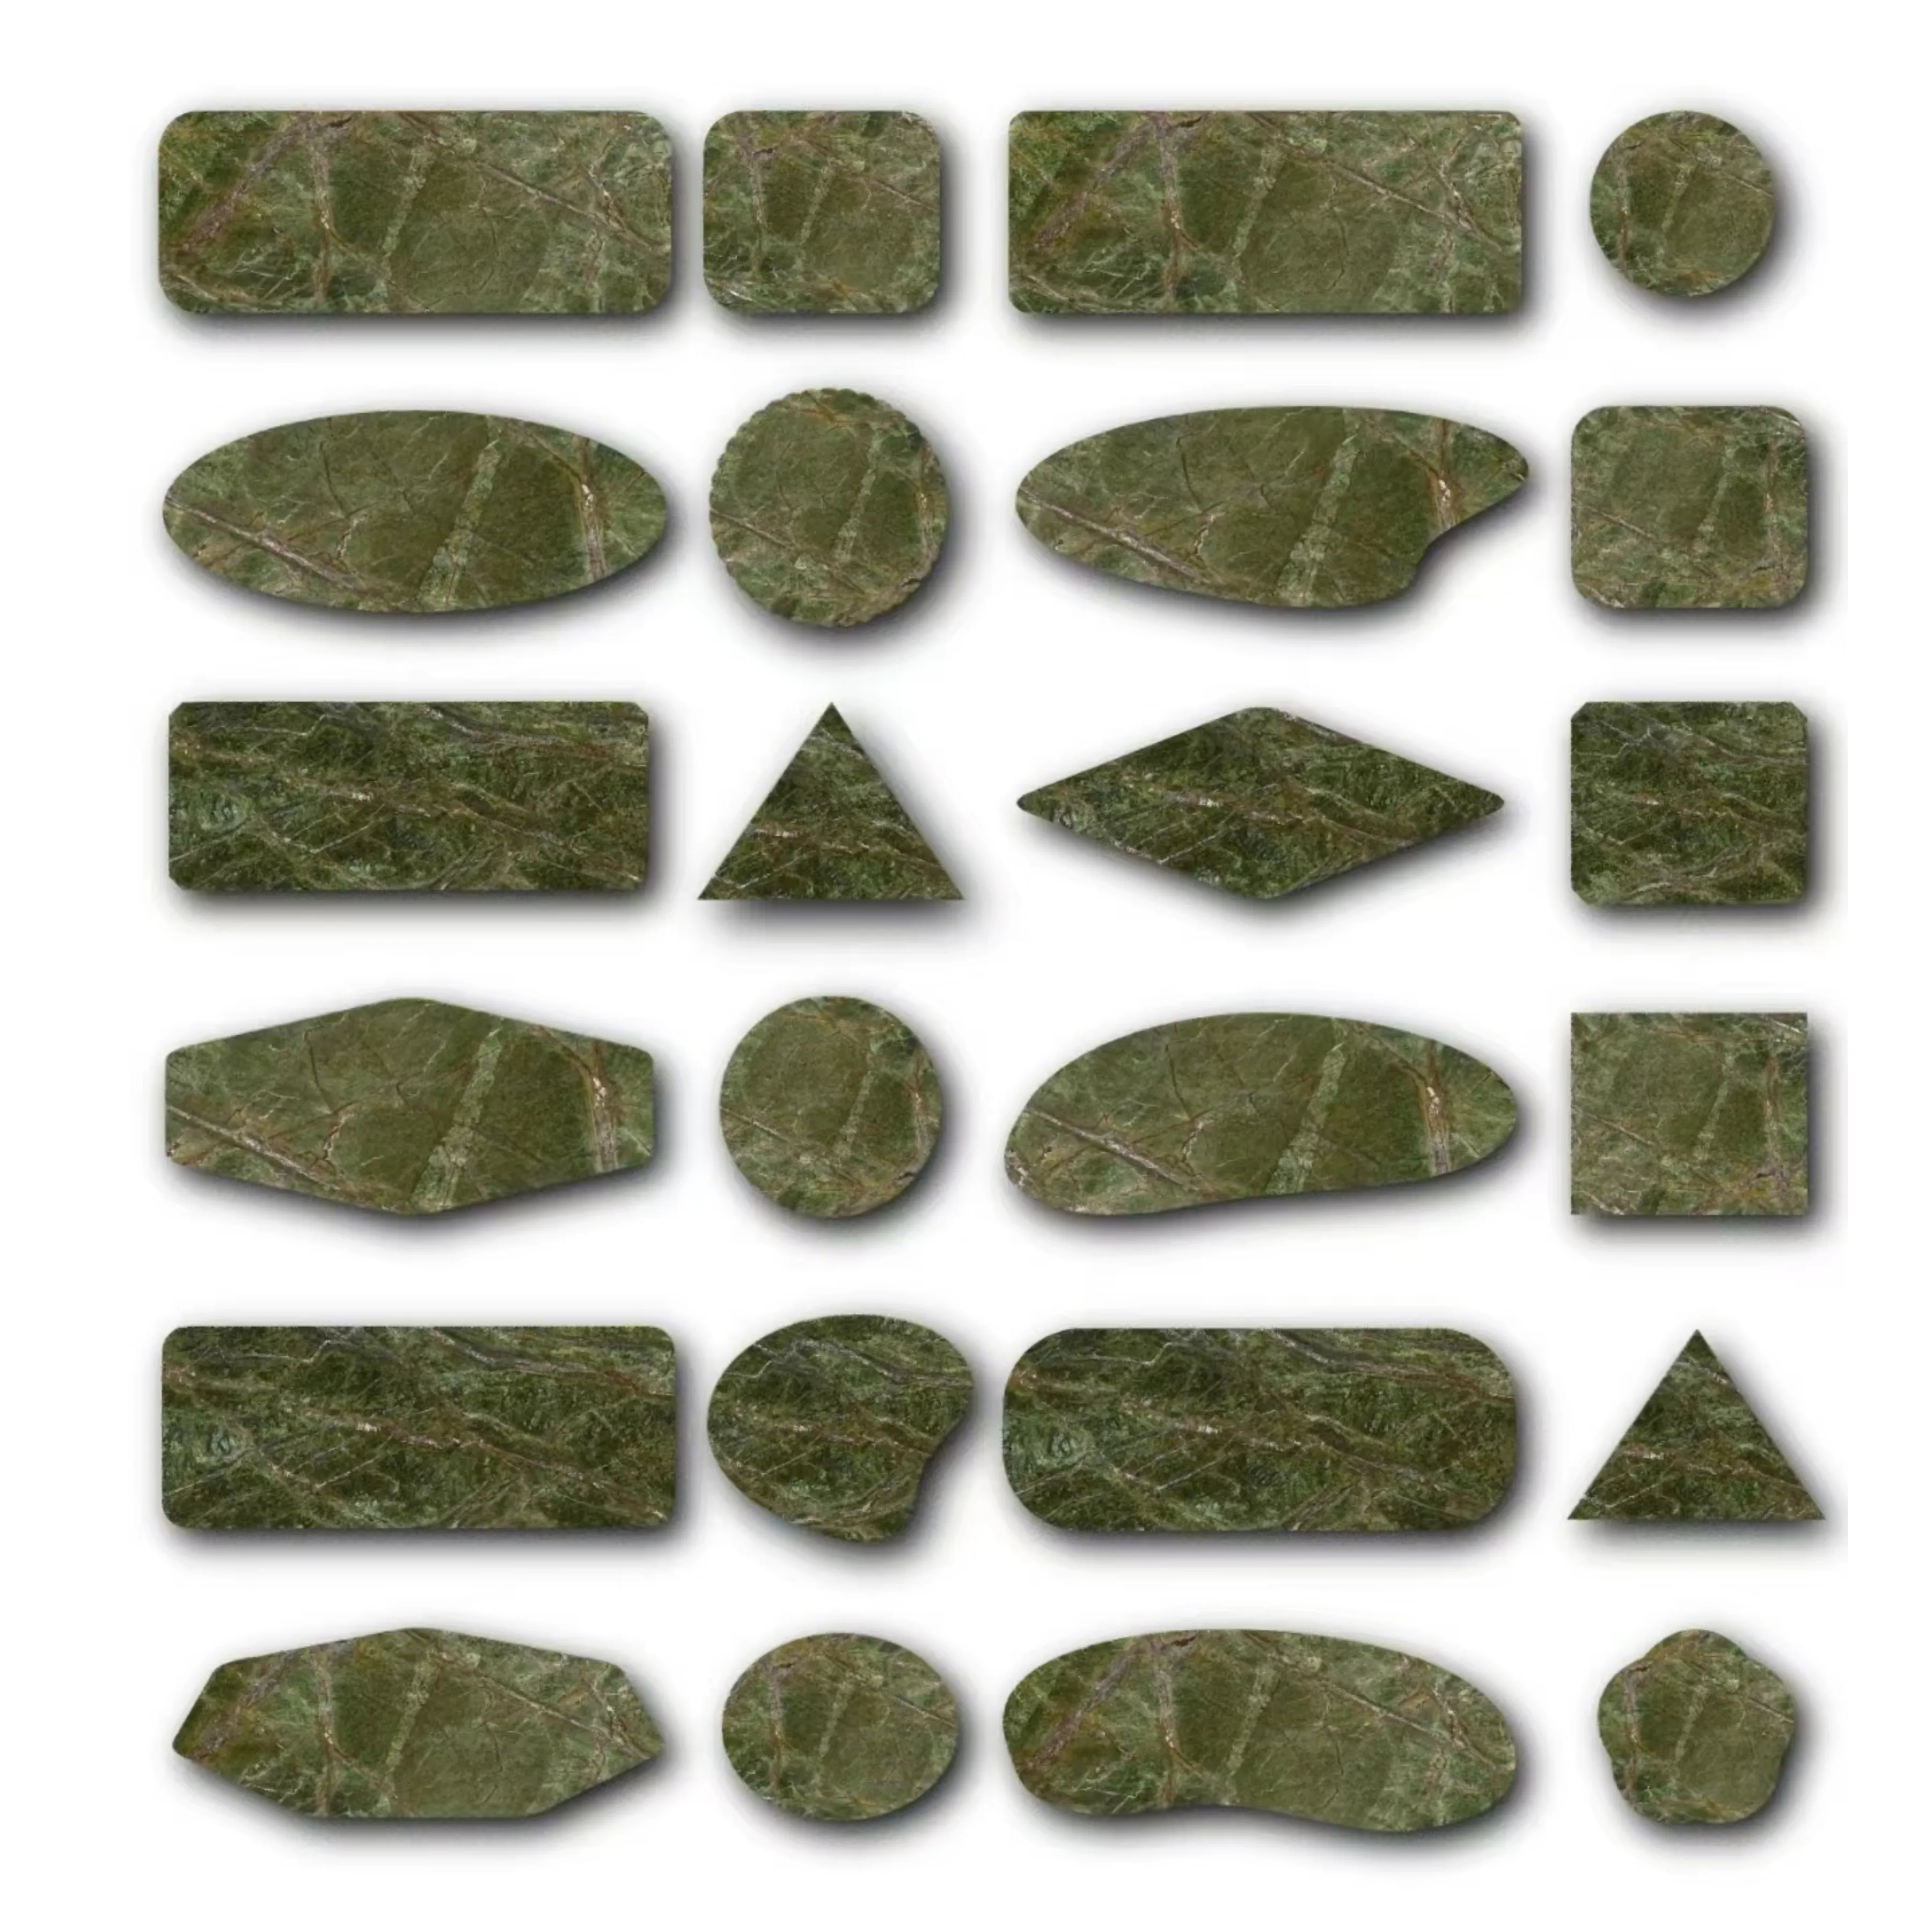 Regenwald grüne Marmorplatten Fliesenteile Blöcke 100 % Naturmarmor große Plattenboden poliert / geschliffen Regenwald grüner Steinablage